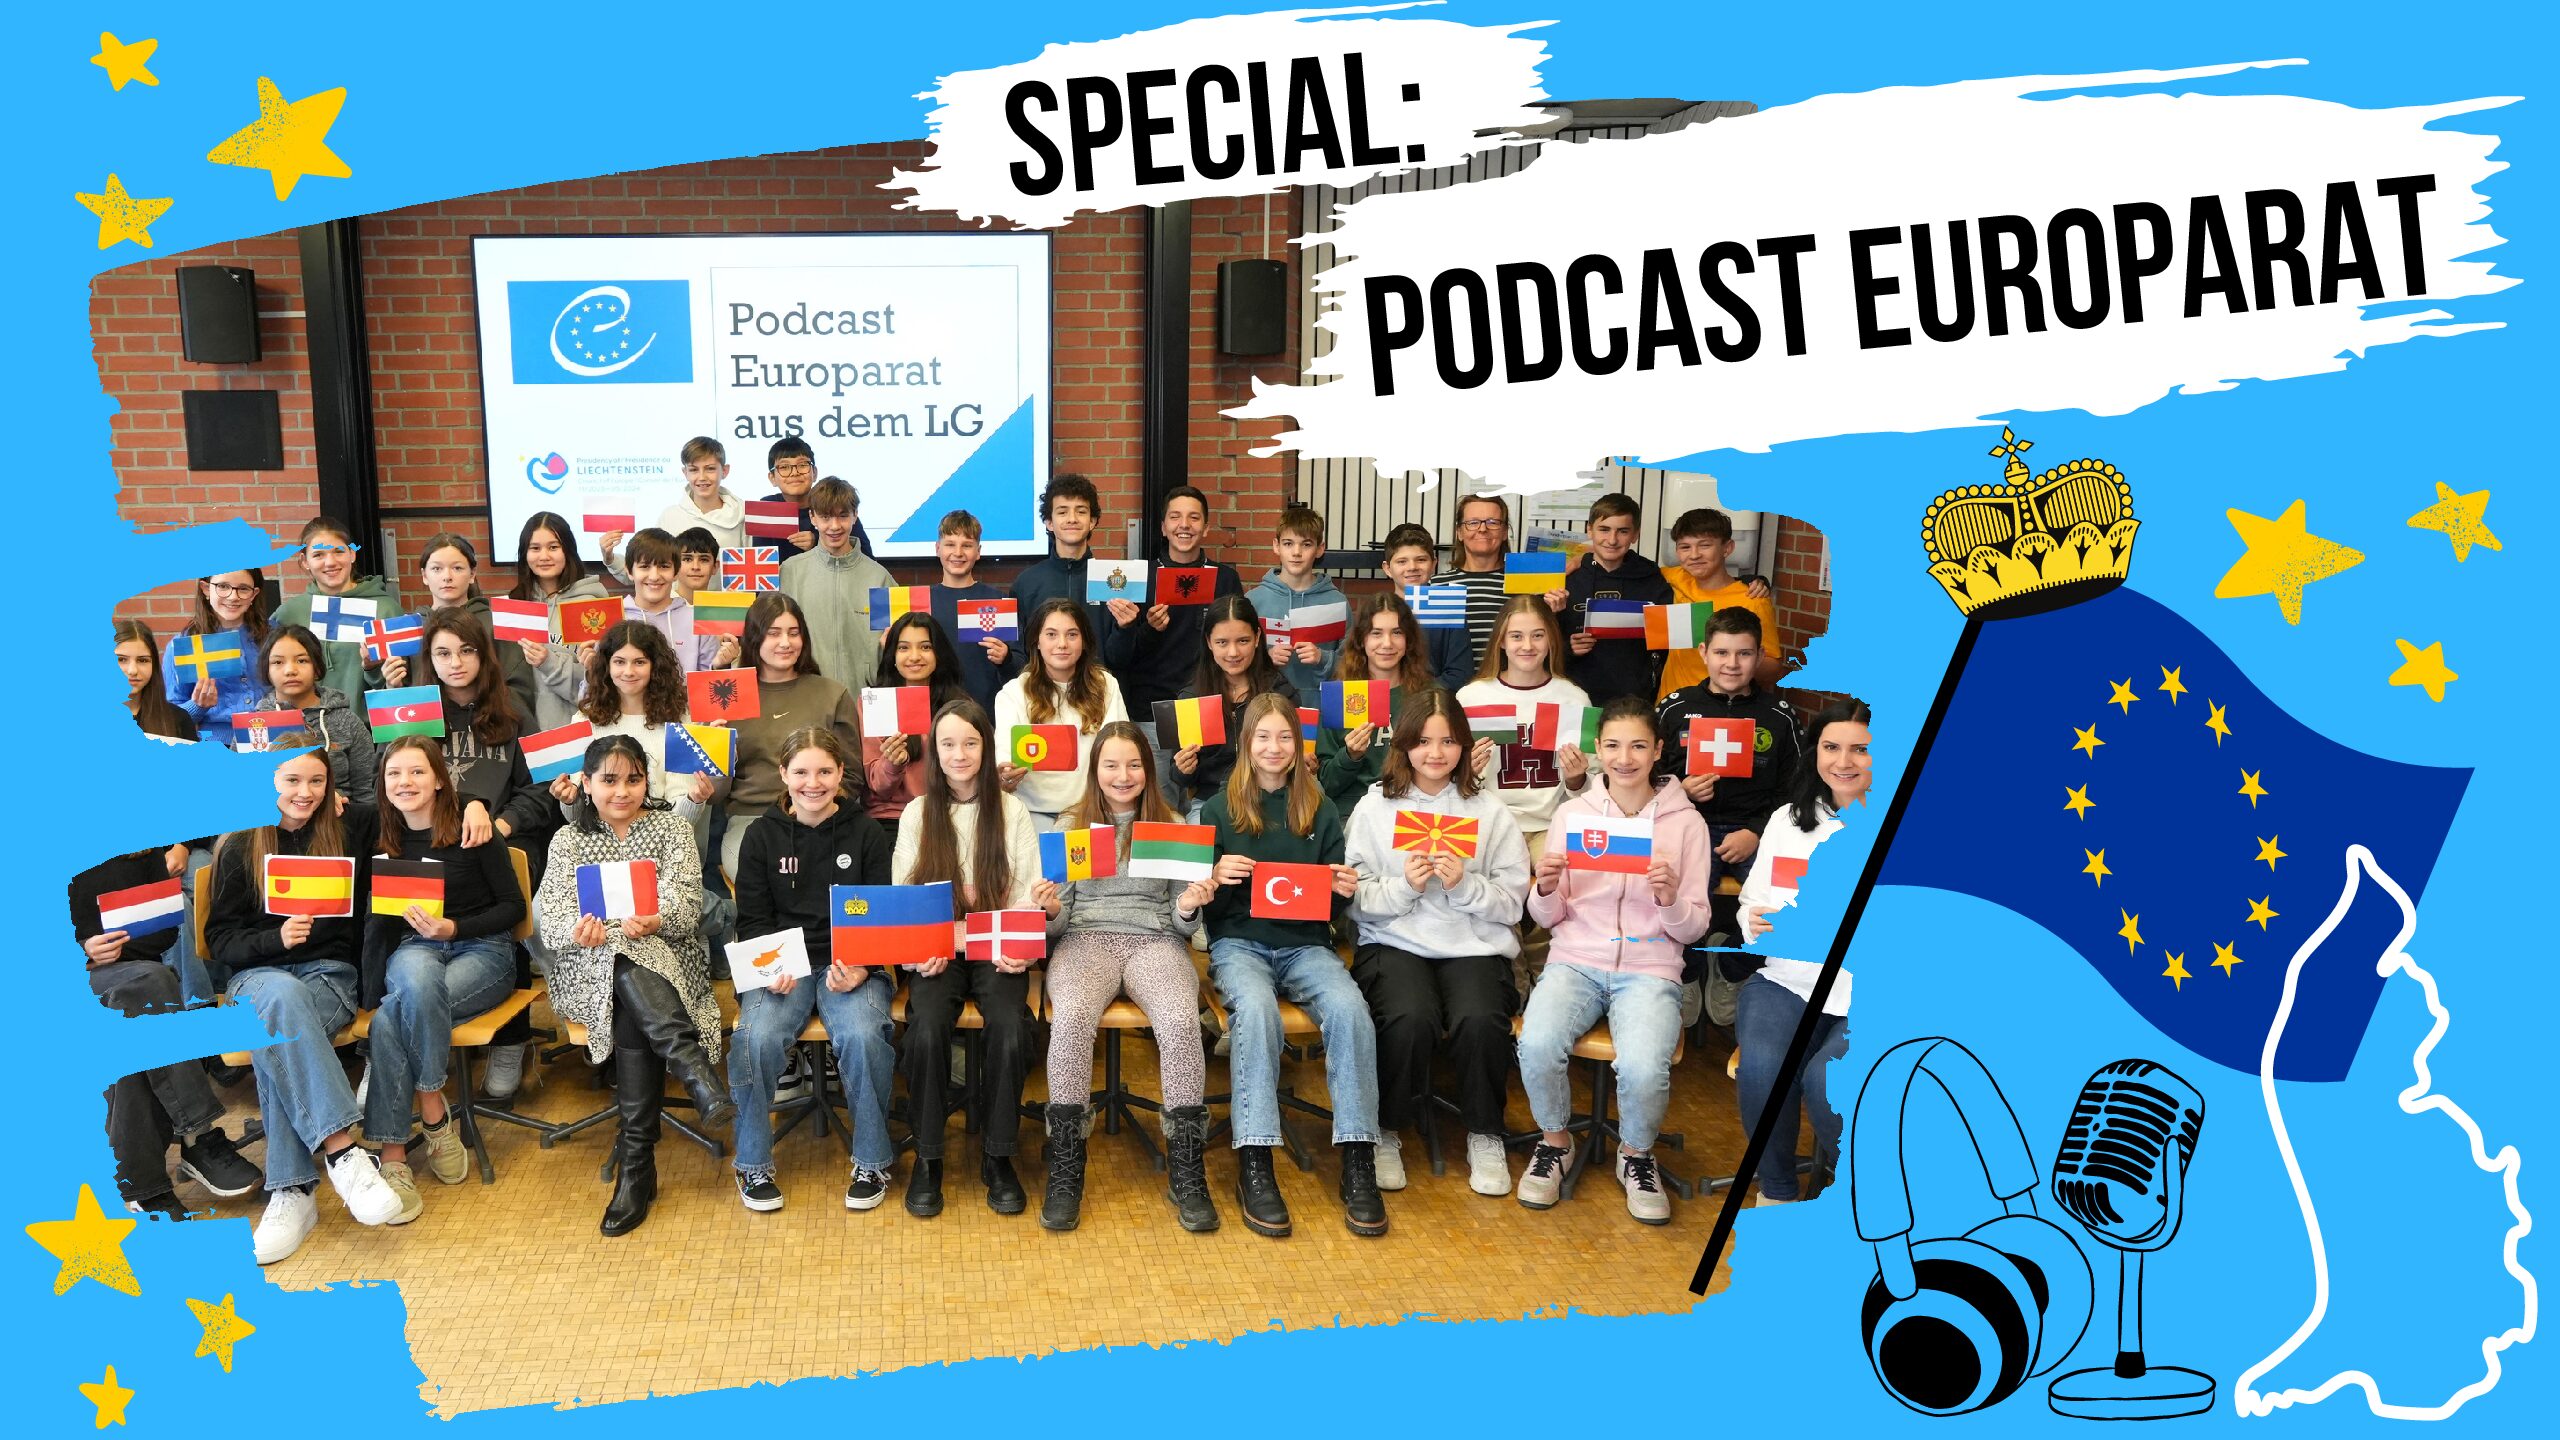 Podcast Europarat aus dem LG